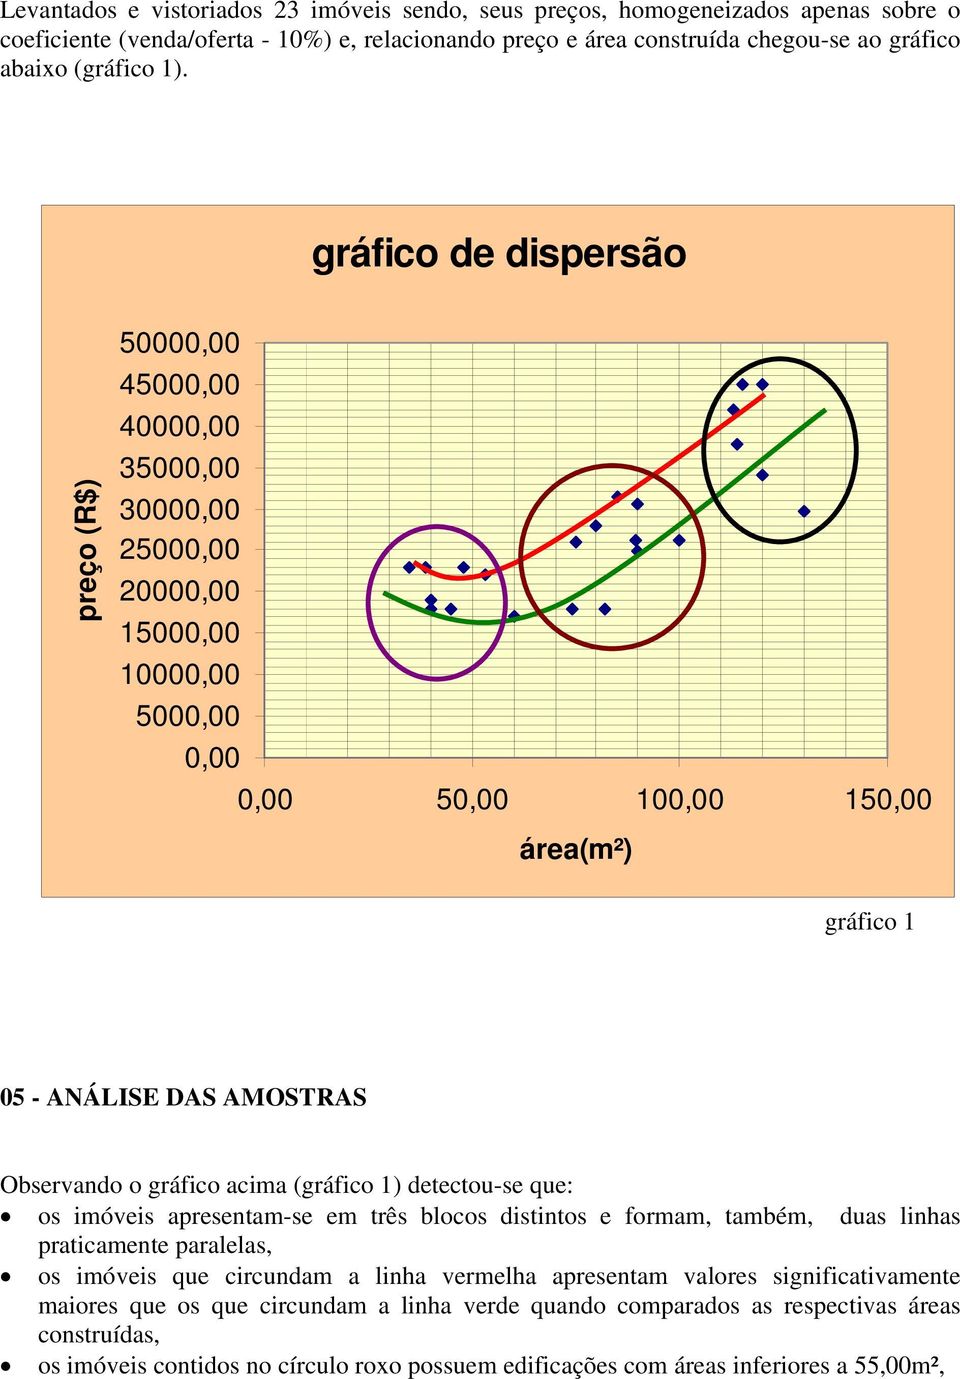 Observando o gráfico acima (gráfico 1) detectou-se que: os imóveis apresentam-se em três blocos distintos e formam, também, duas linhas praticamente paralelas, os imóveis que circundam a linha